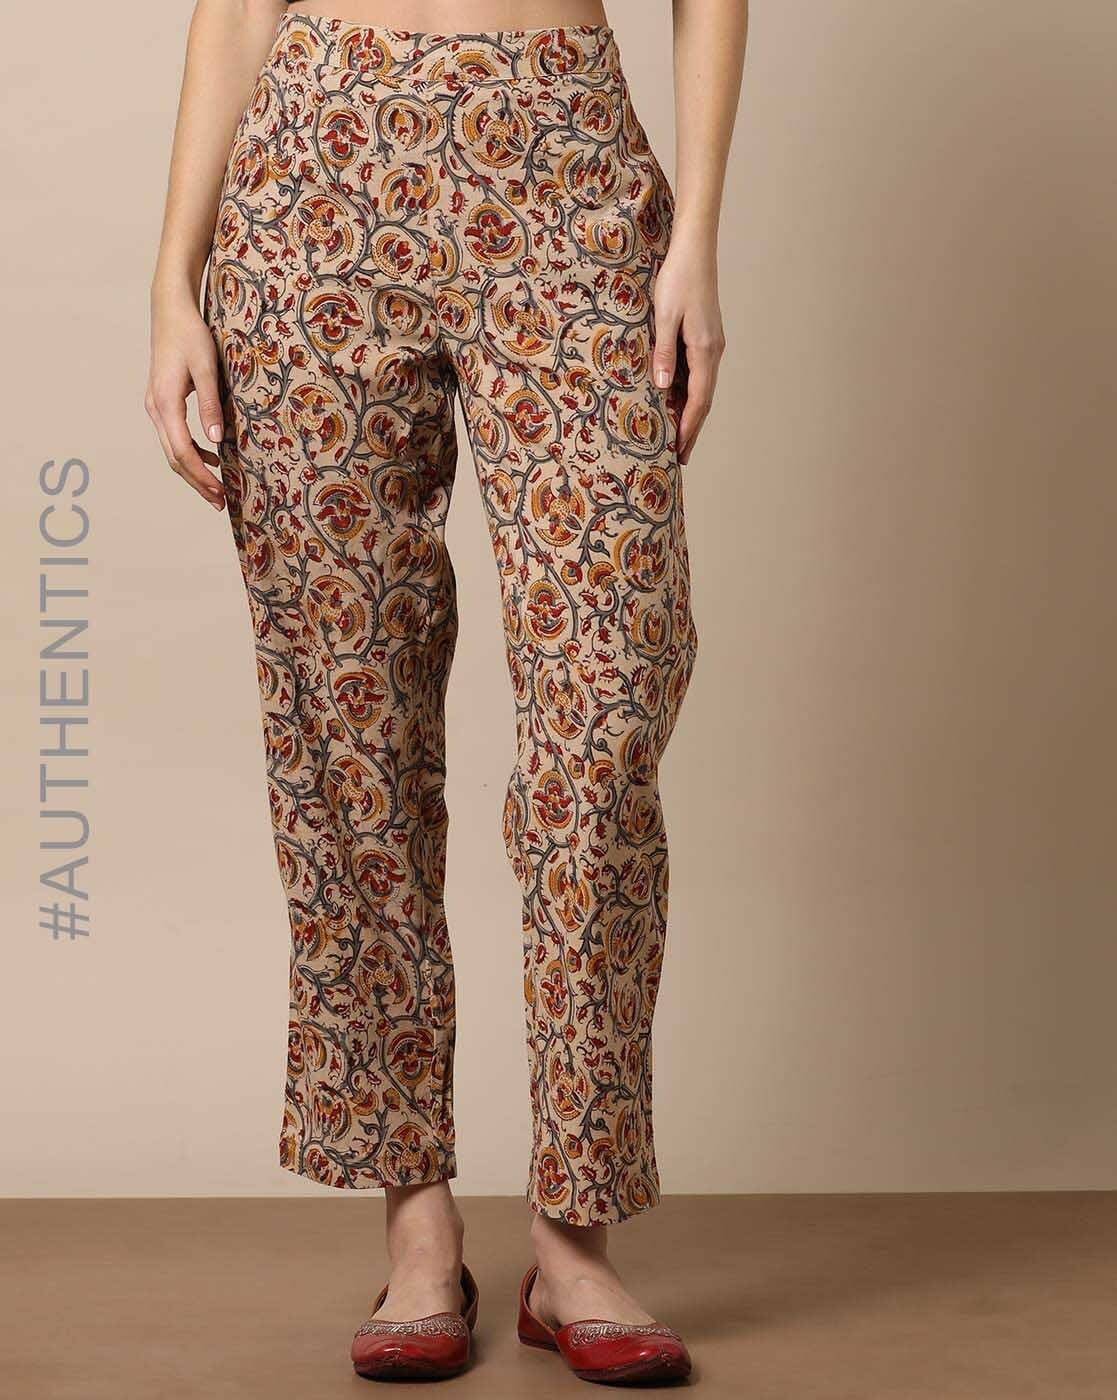 Buy Blue Pants for Women by Indie Picks Online  Ajiocom